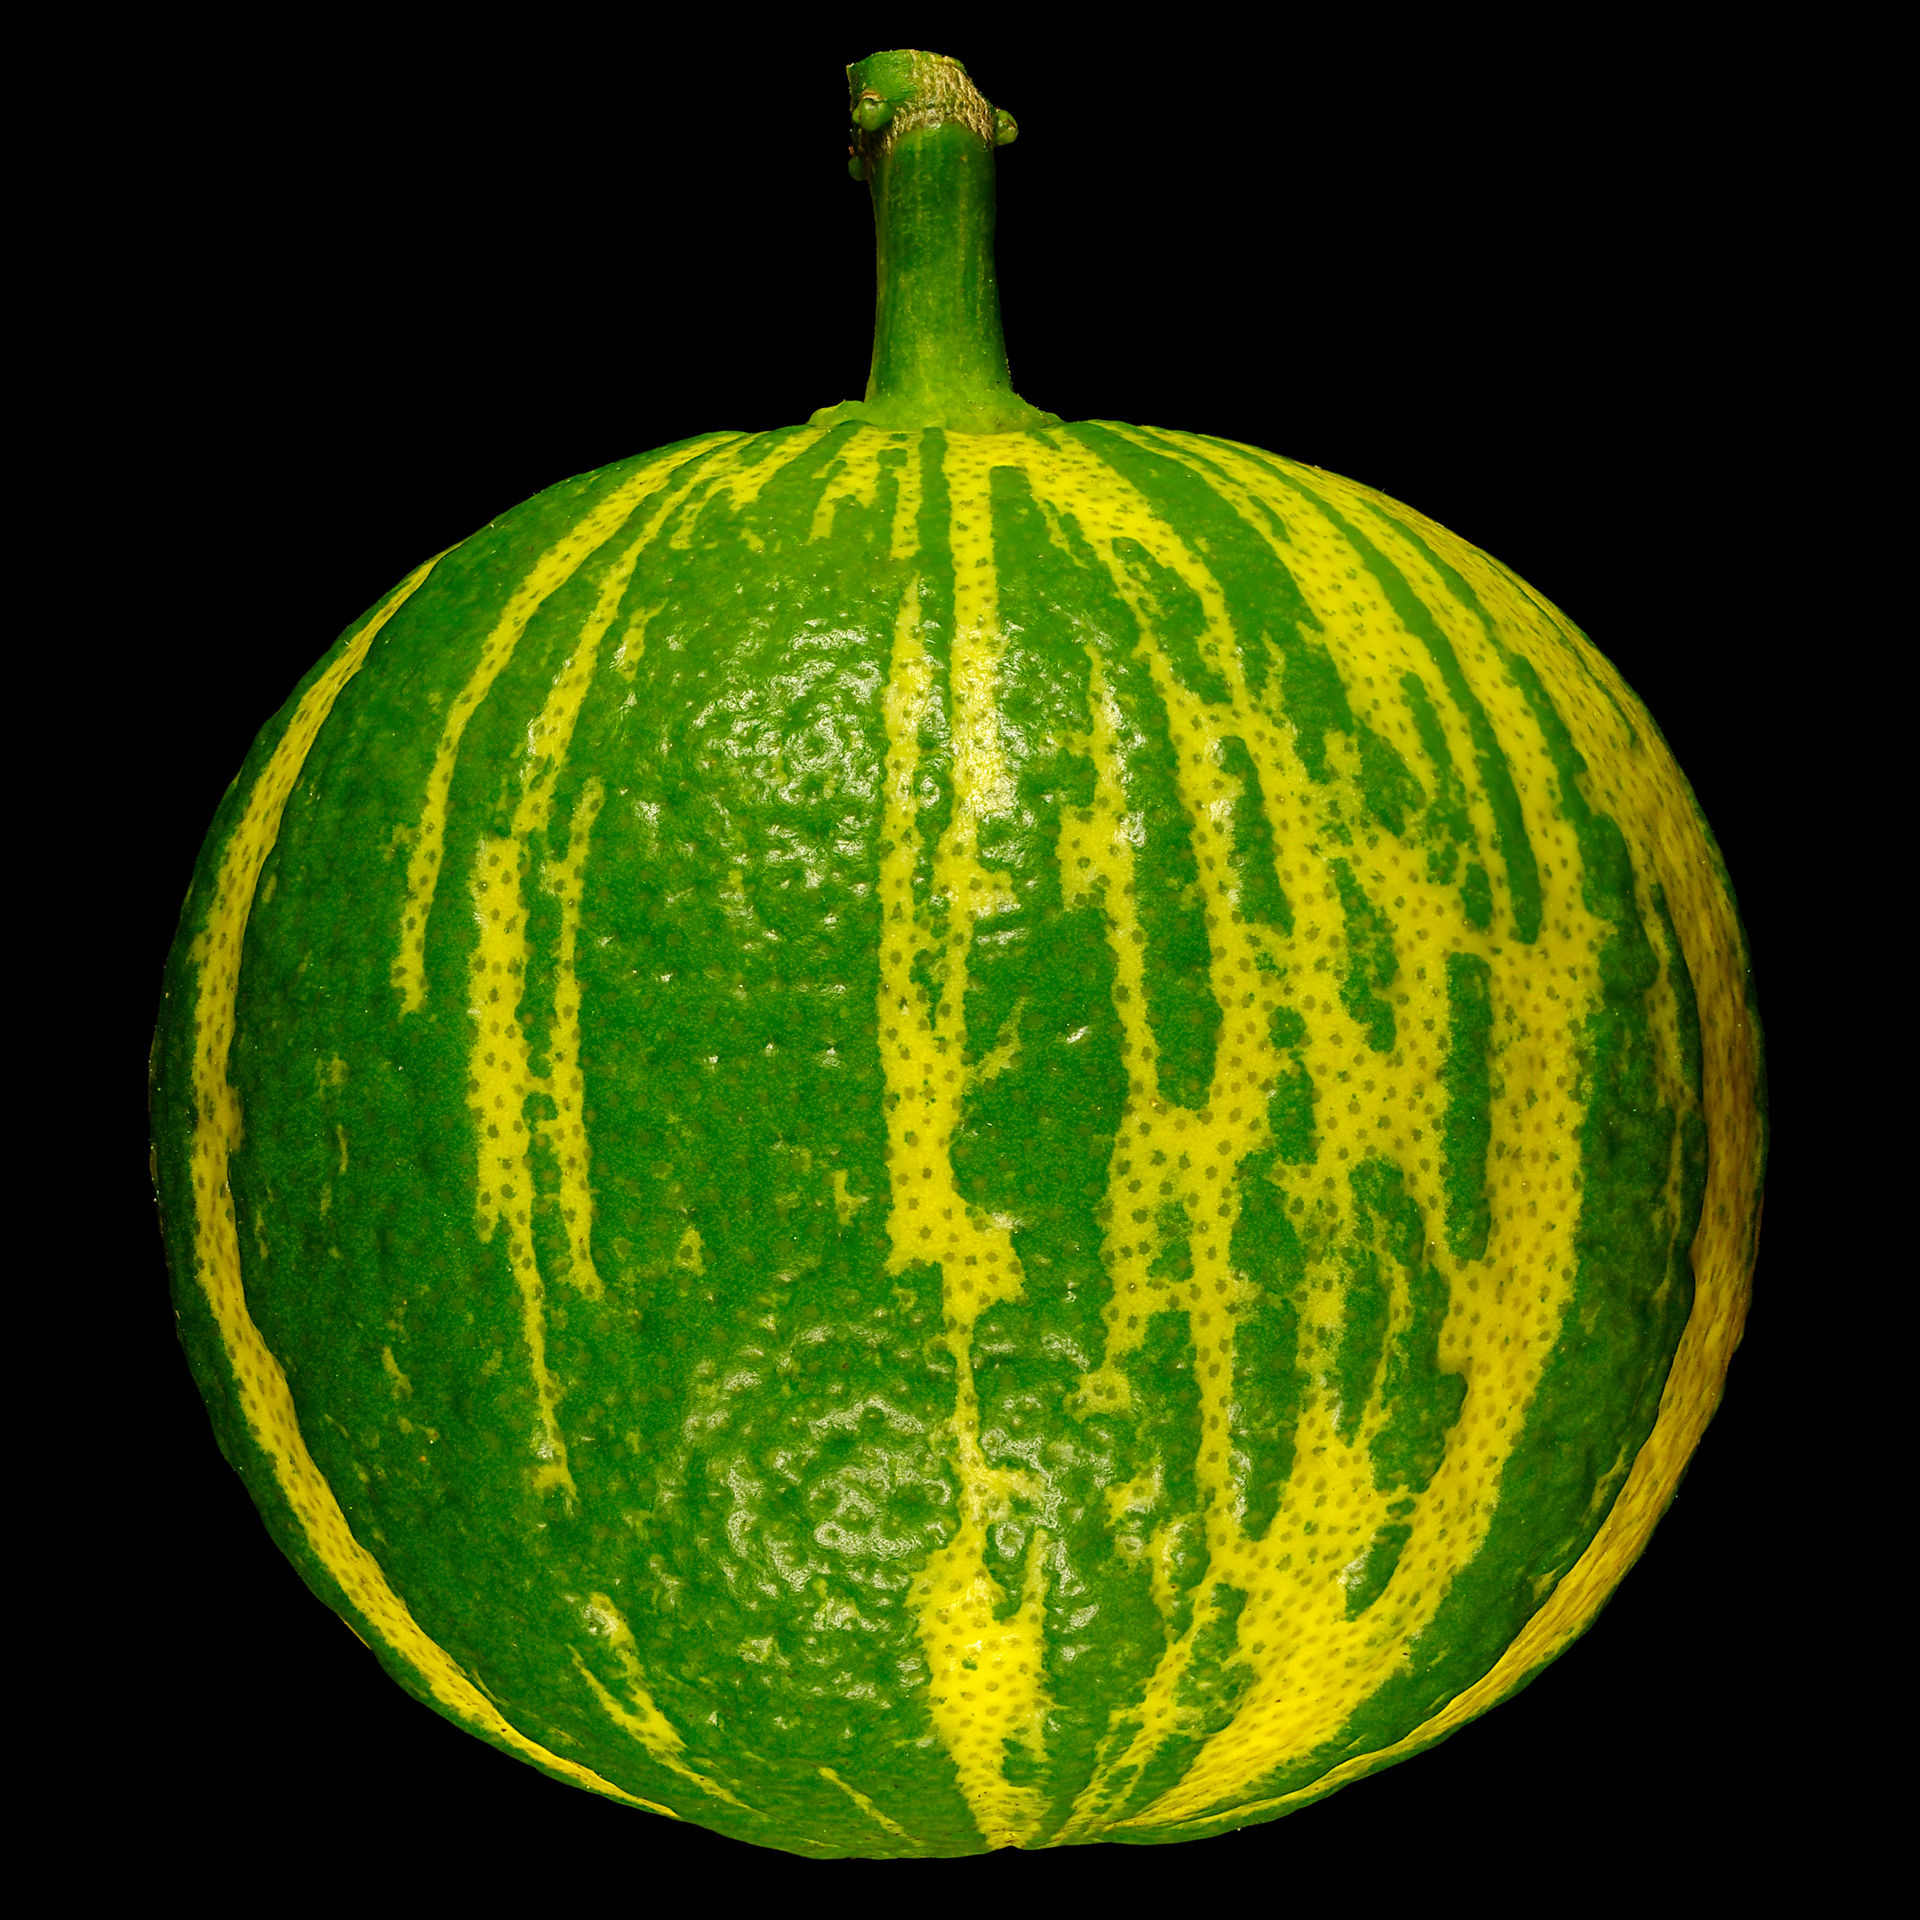 Striped bitter orange: Citrus × aurantium ‘Fasciata’ (unripe)